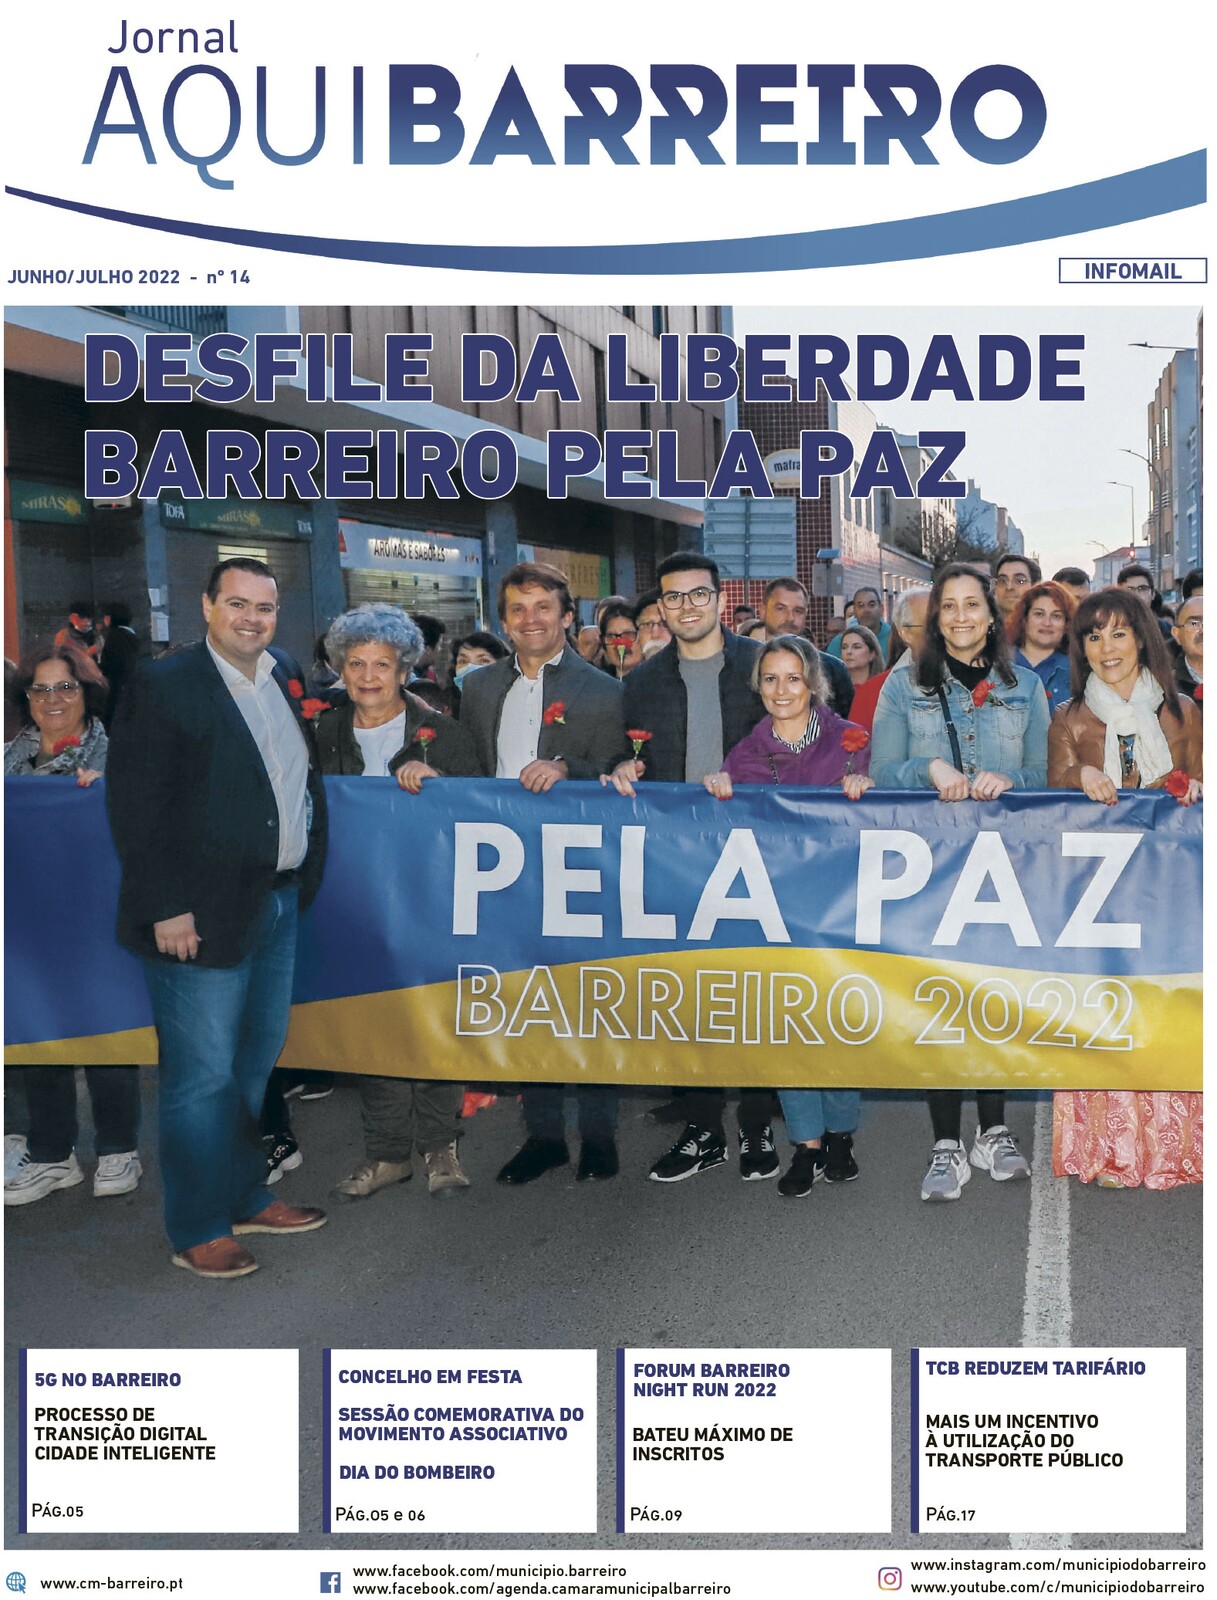 Jornal “Aqui Barreiro” de junho/julho de 2022 já disponível